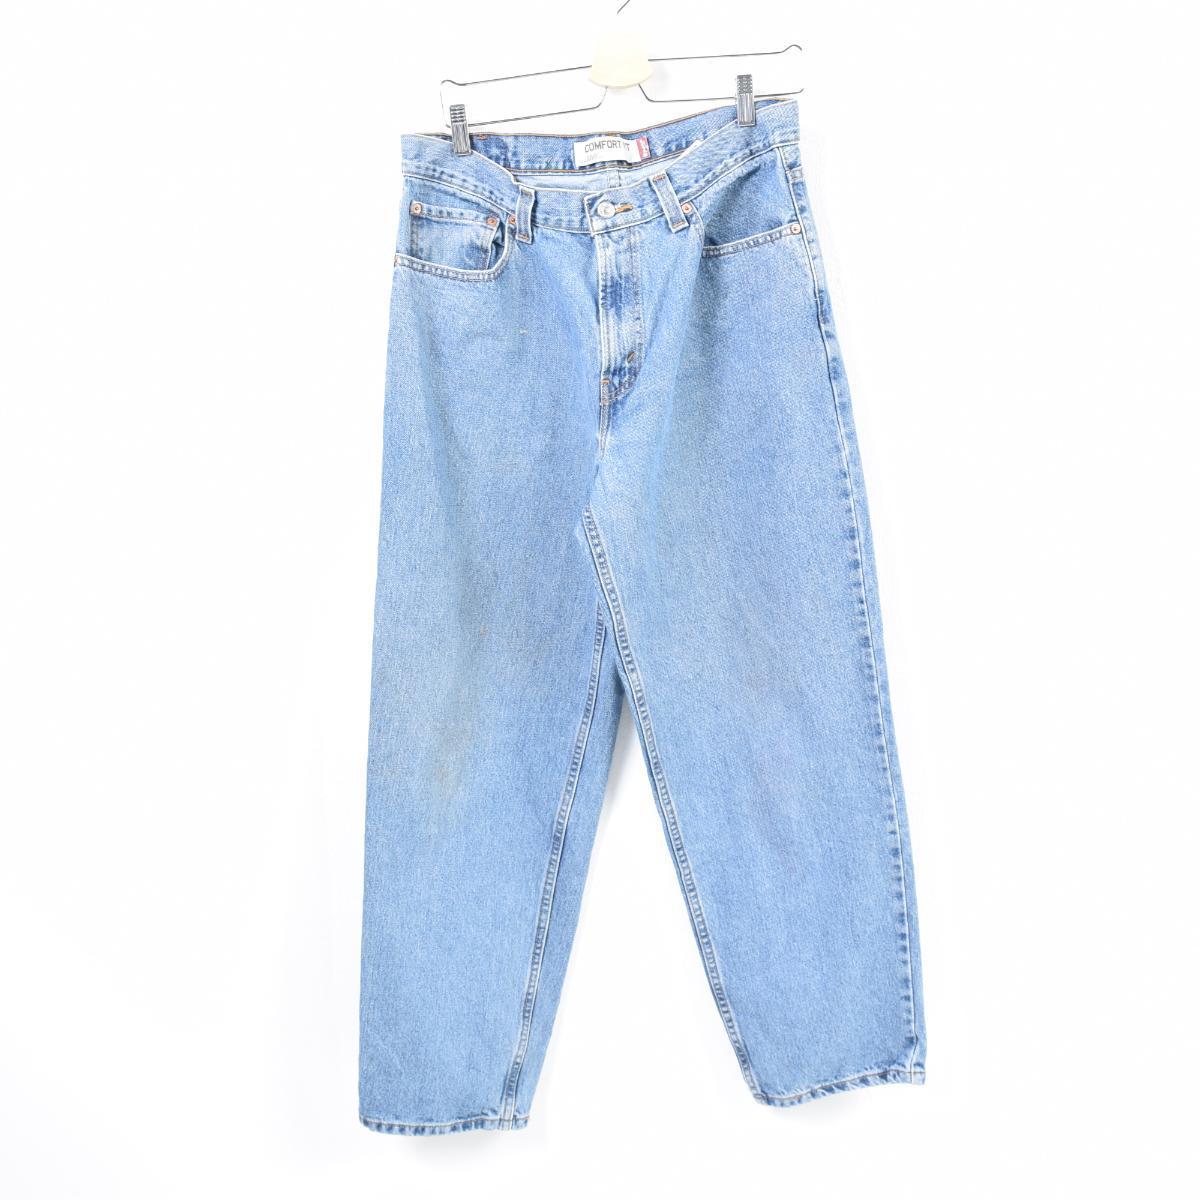 levi's 560 comfort fit jeans